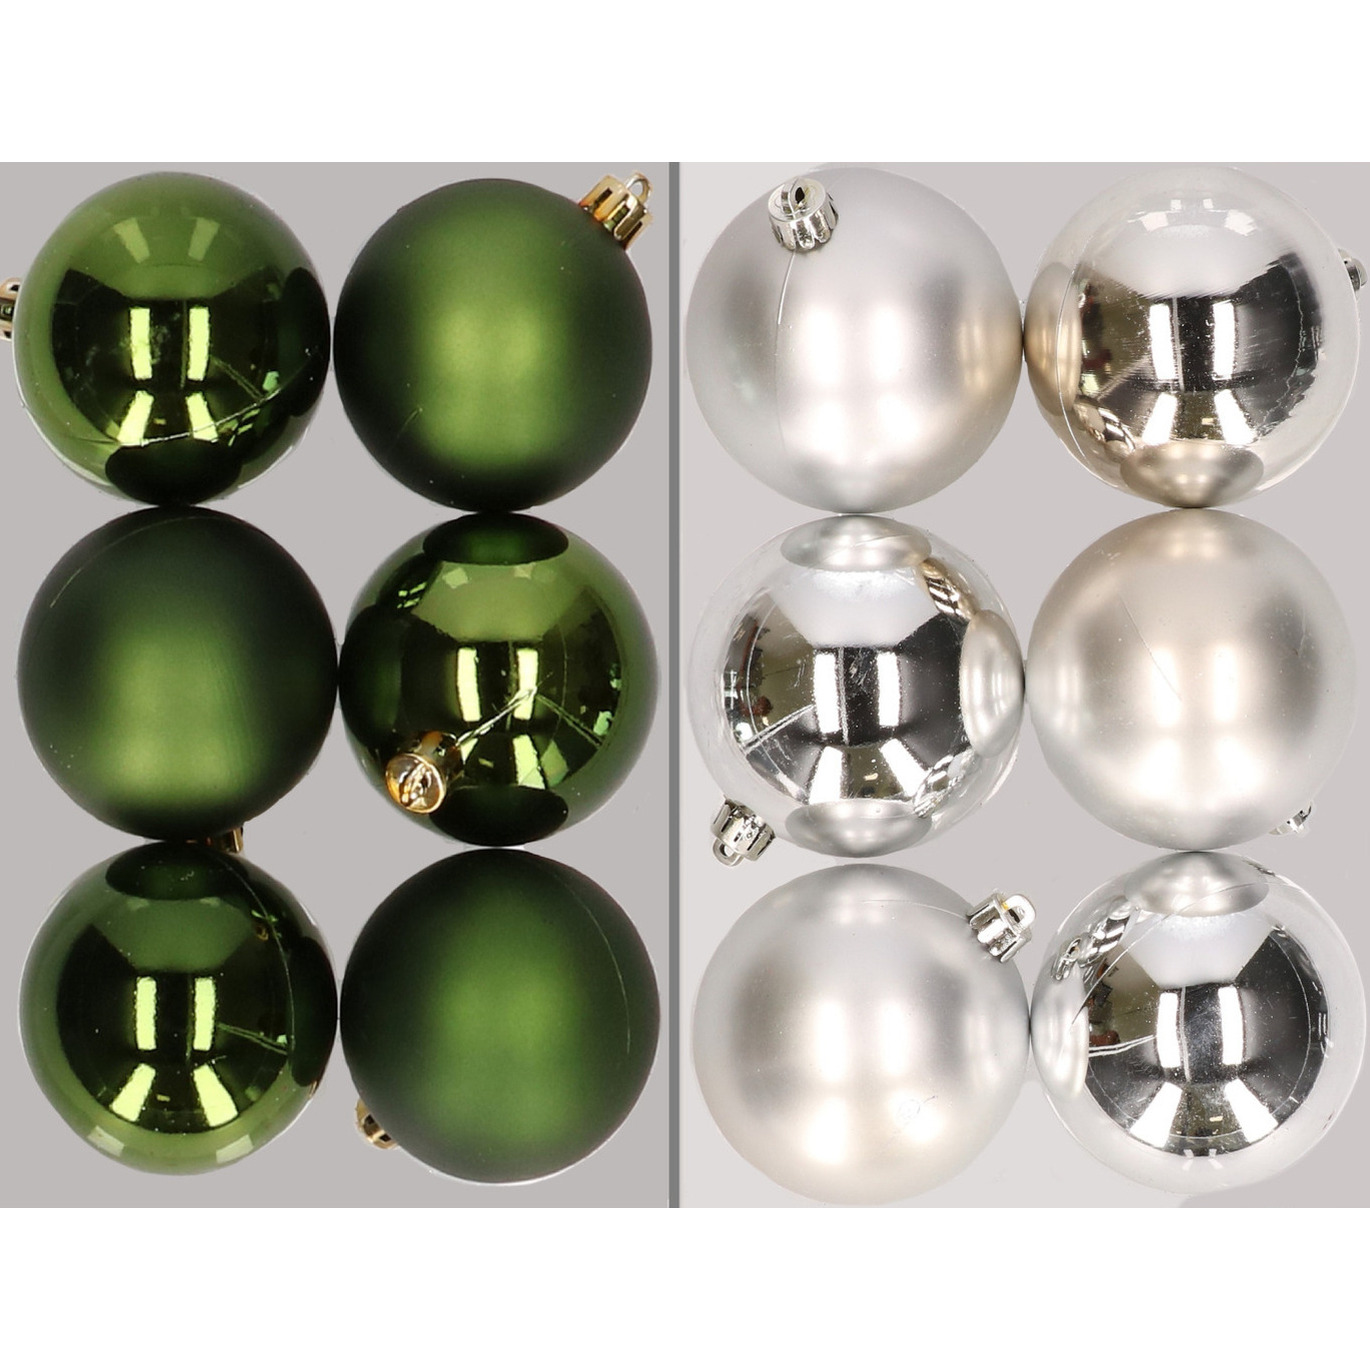 12x stuks kunststof kerstballen mix van donkergroen en zilver 8 cm